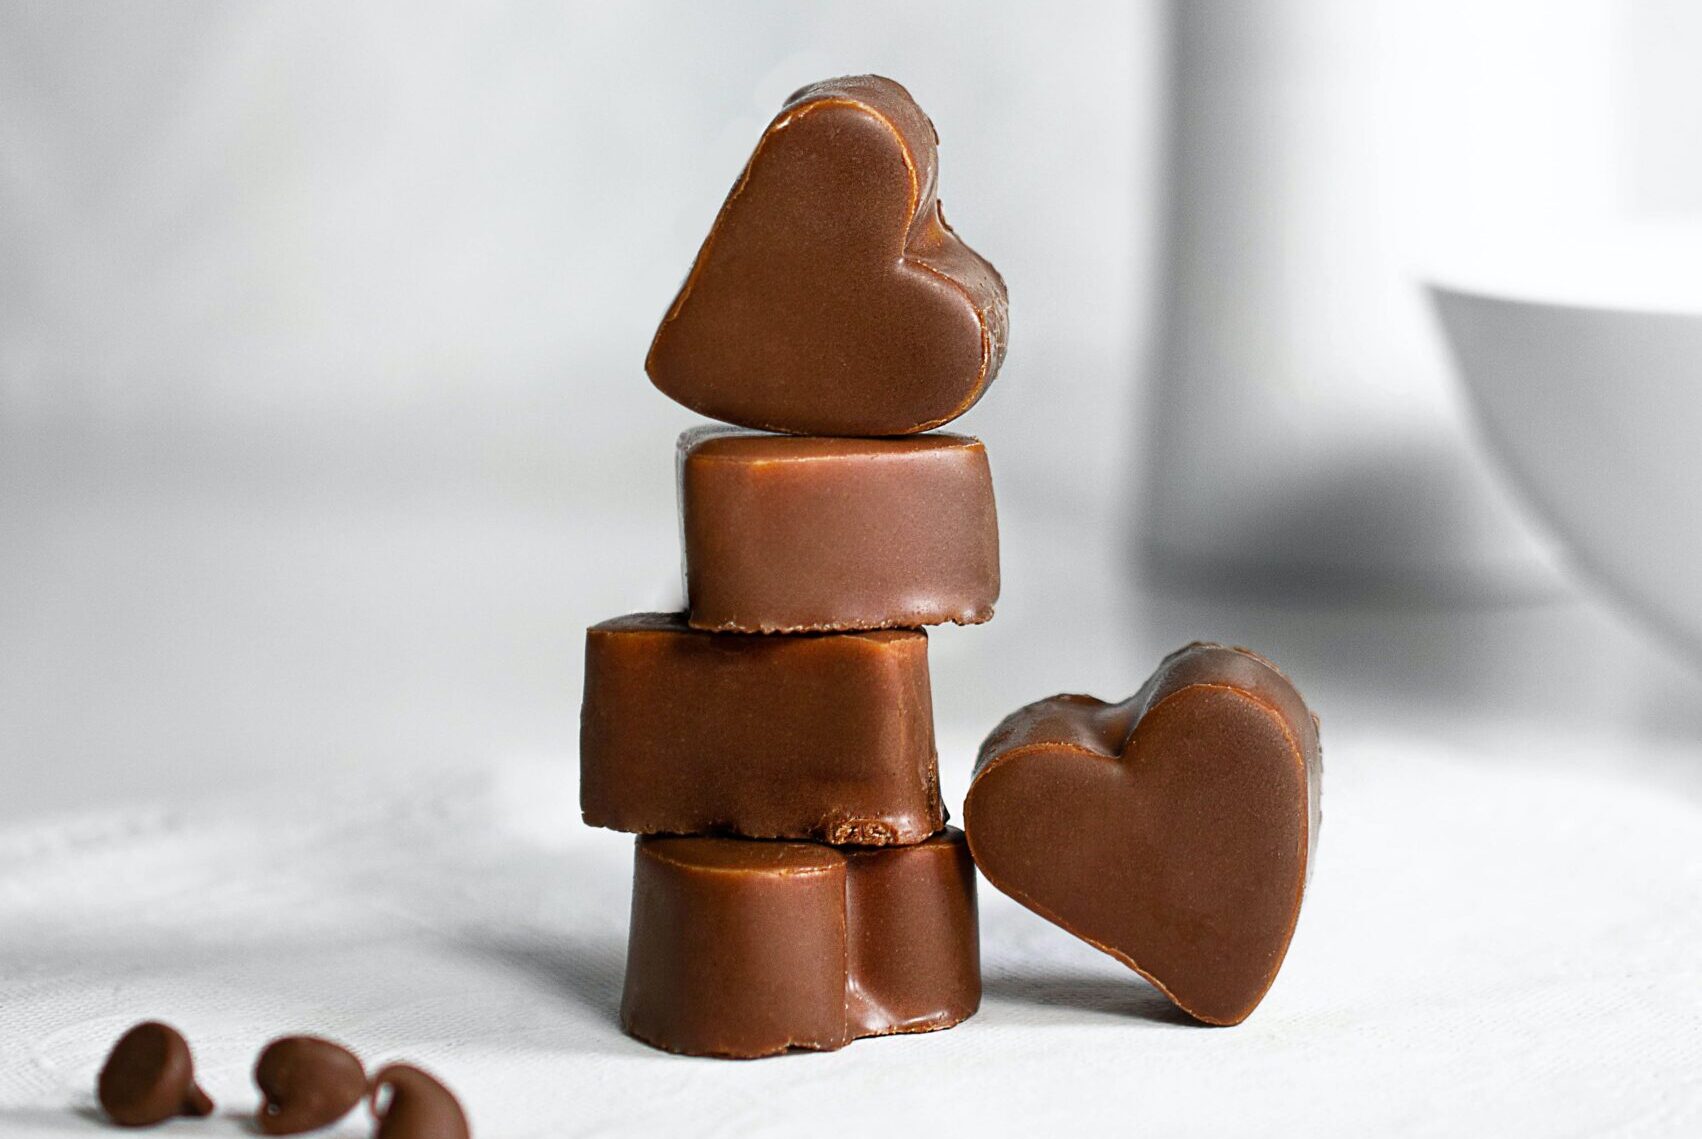 Pourquoi offrir du chocolat à la Saint-Valentin ?